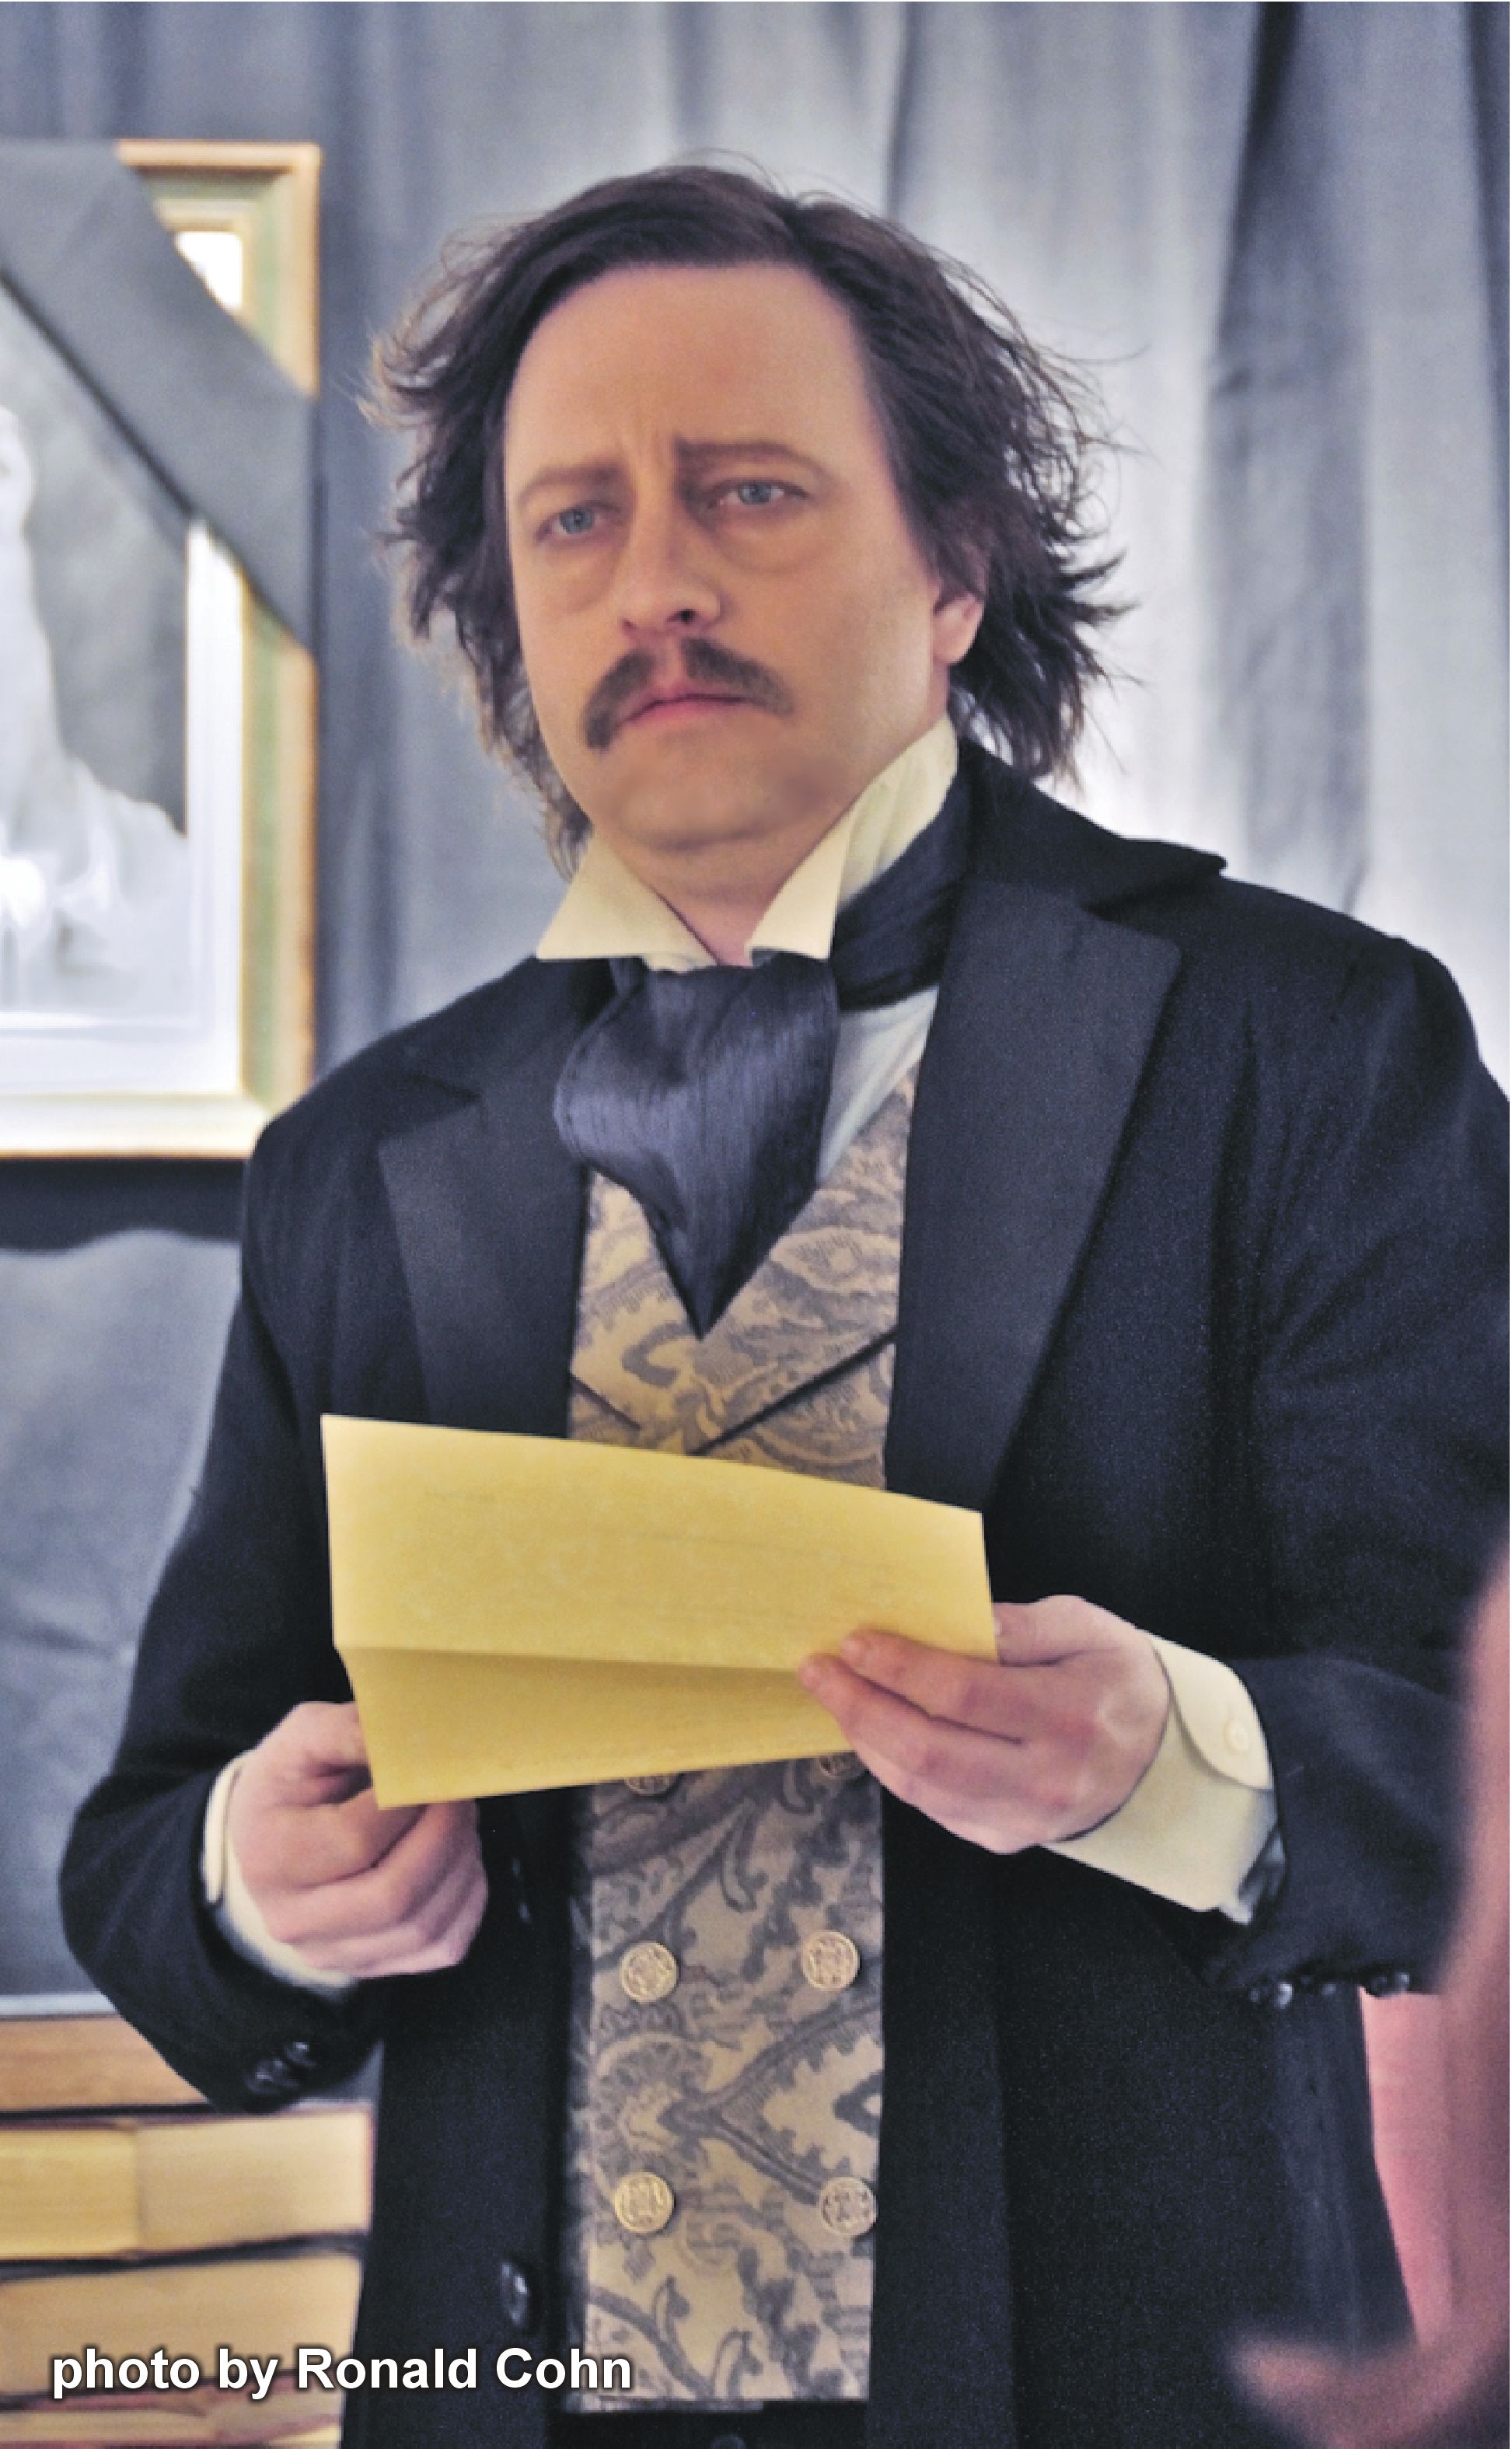 Ghost of Poe; Actor: Mark Sanders as Edgar Allen Poe; Makeup & Hair: Carol Stover; Wardrobe: Margaret Garland